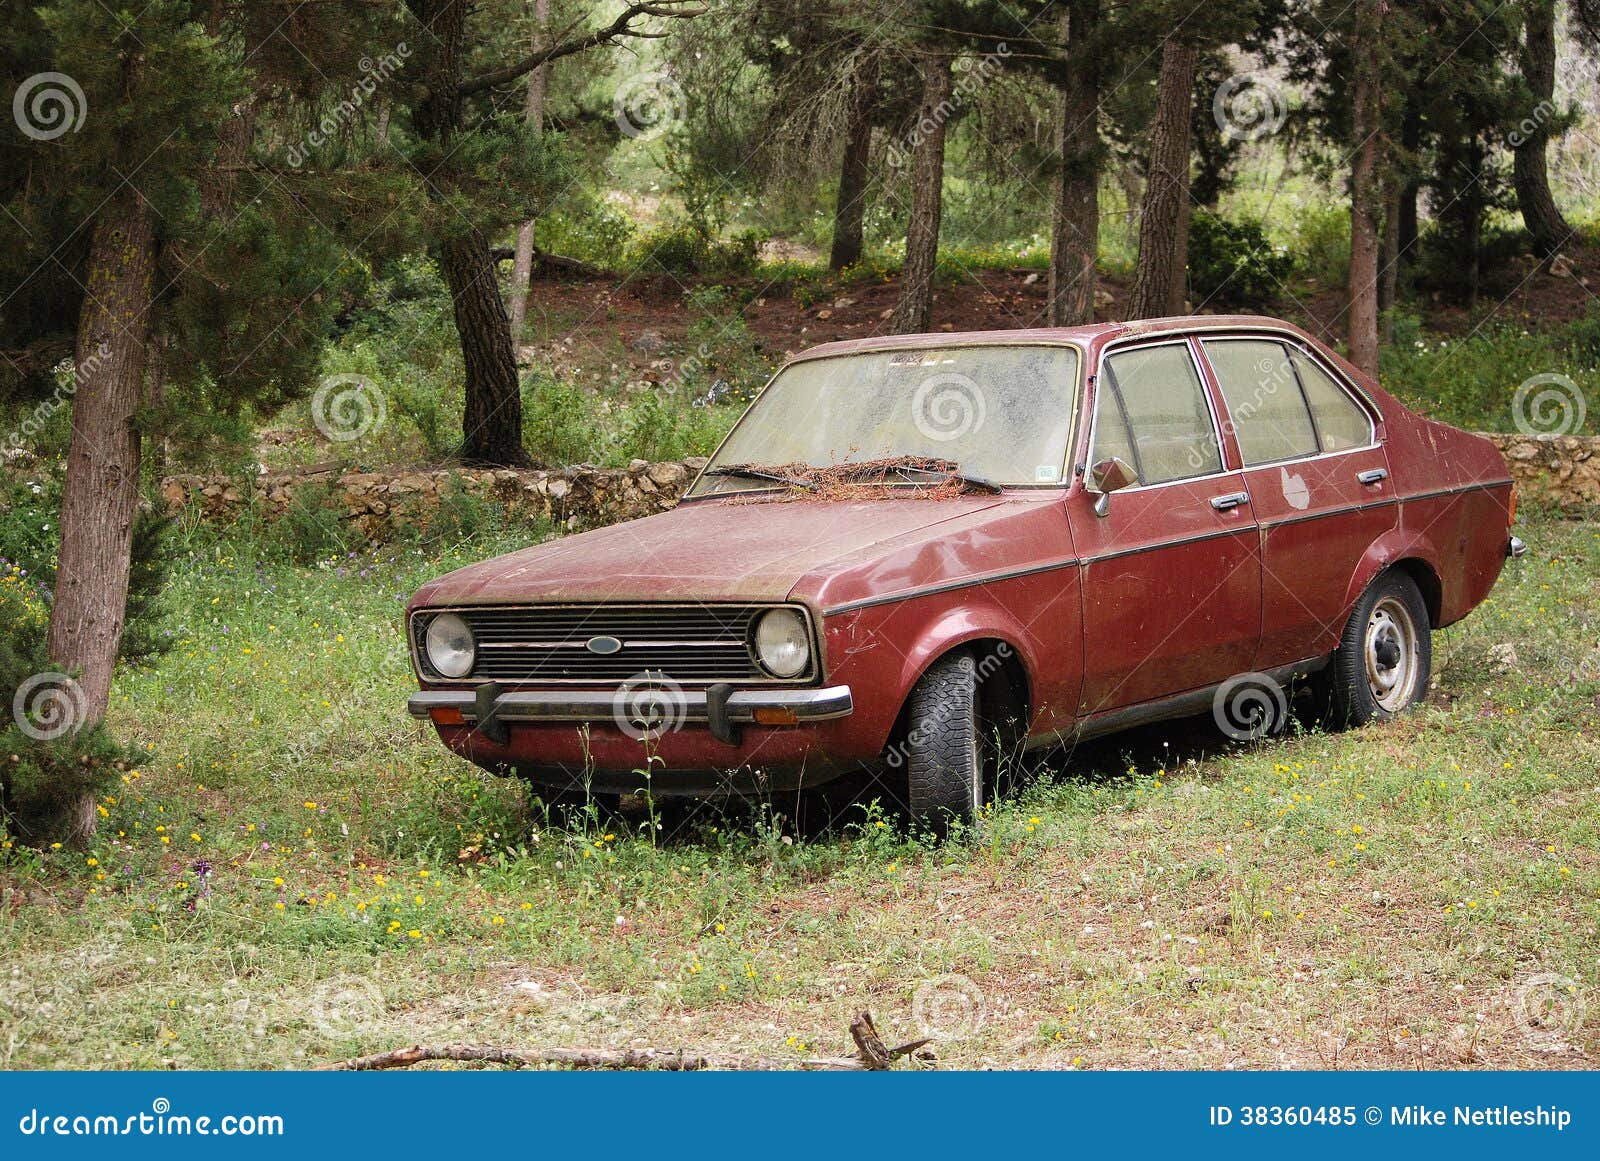 Verlaten Oude Die Auto Griekenland Stock Afbeelding - Image of wijnoogst, retro: 38360485